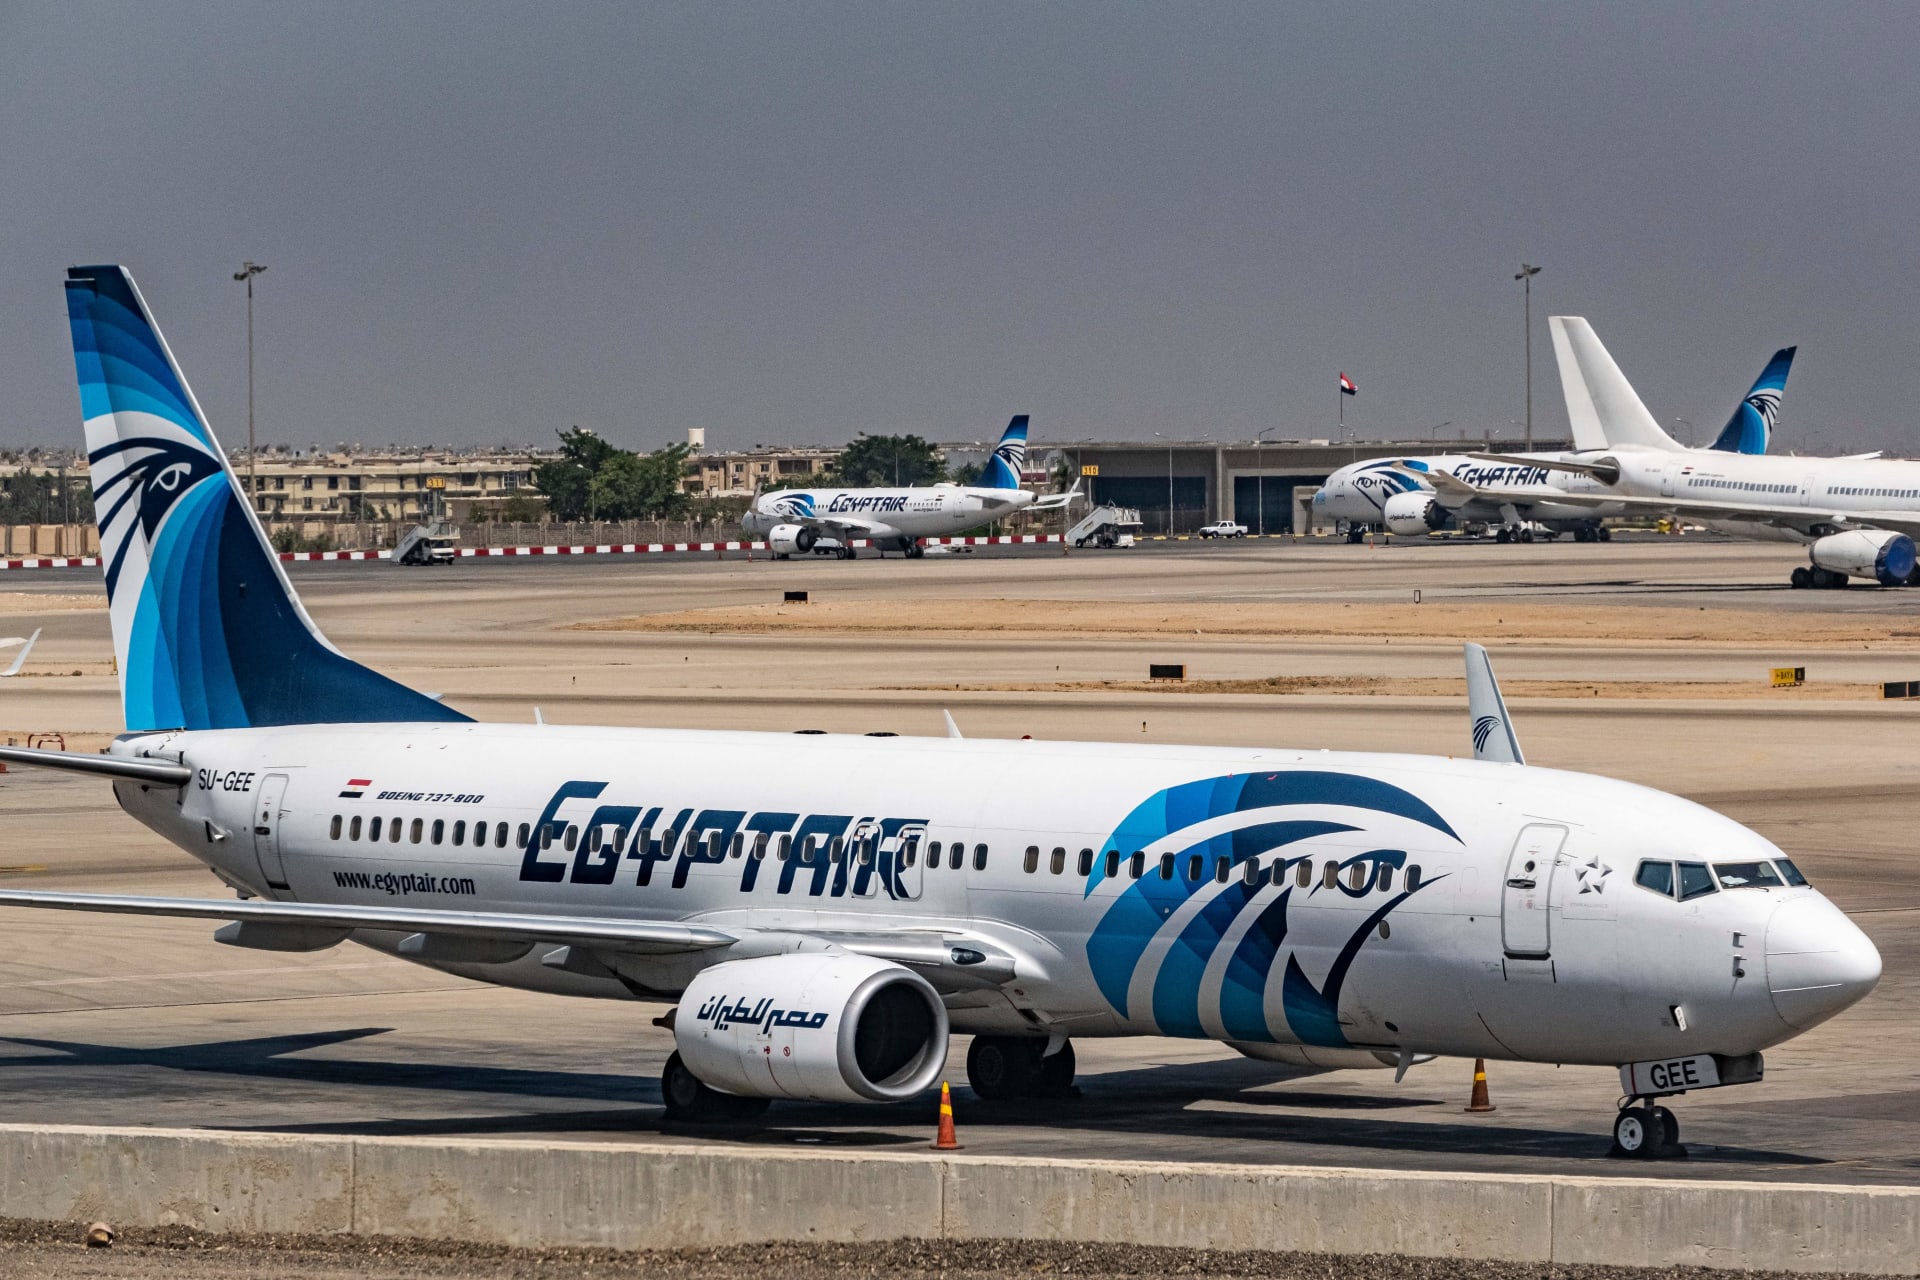 صورة تم التقاطها في 28 مايو 2021 تُظهر طائرة مصر للطيران من طراز بوينج 737 على مدرج مطار القاهرة الدولي في مصر.